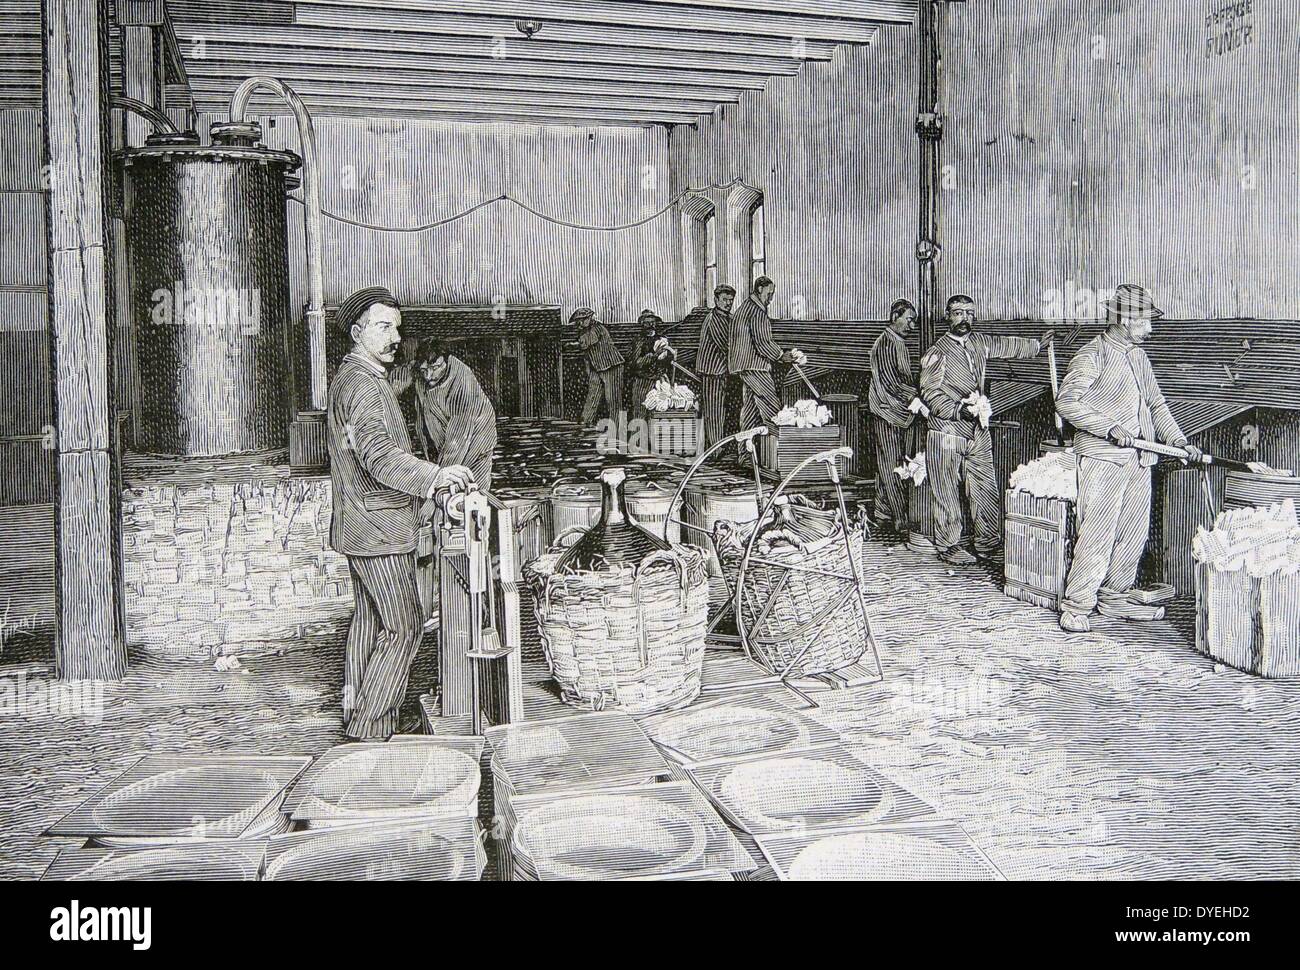 Chardonnet Seide - Rayon - das erste kommerziell produzierte Man-made Faser. Die Nitro-Cellulose "Baumwolle", sehr ähnlich zu gun-Baumwolle und leicht entzündlich. Von "La Nature", Paris, 1898. Stockfoto